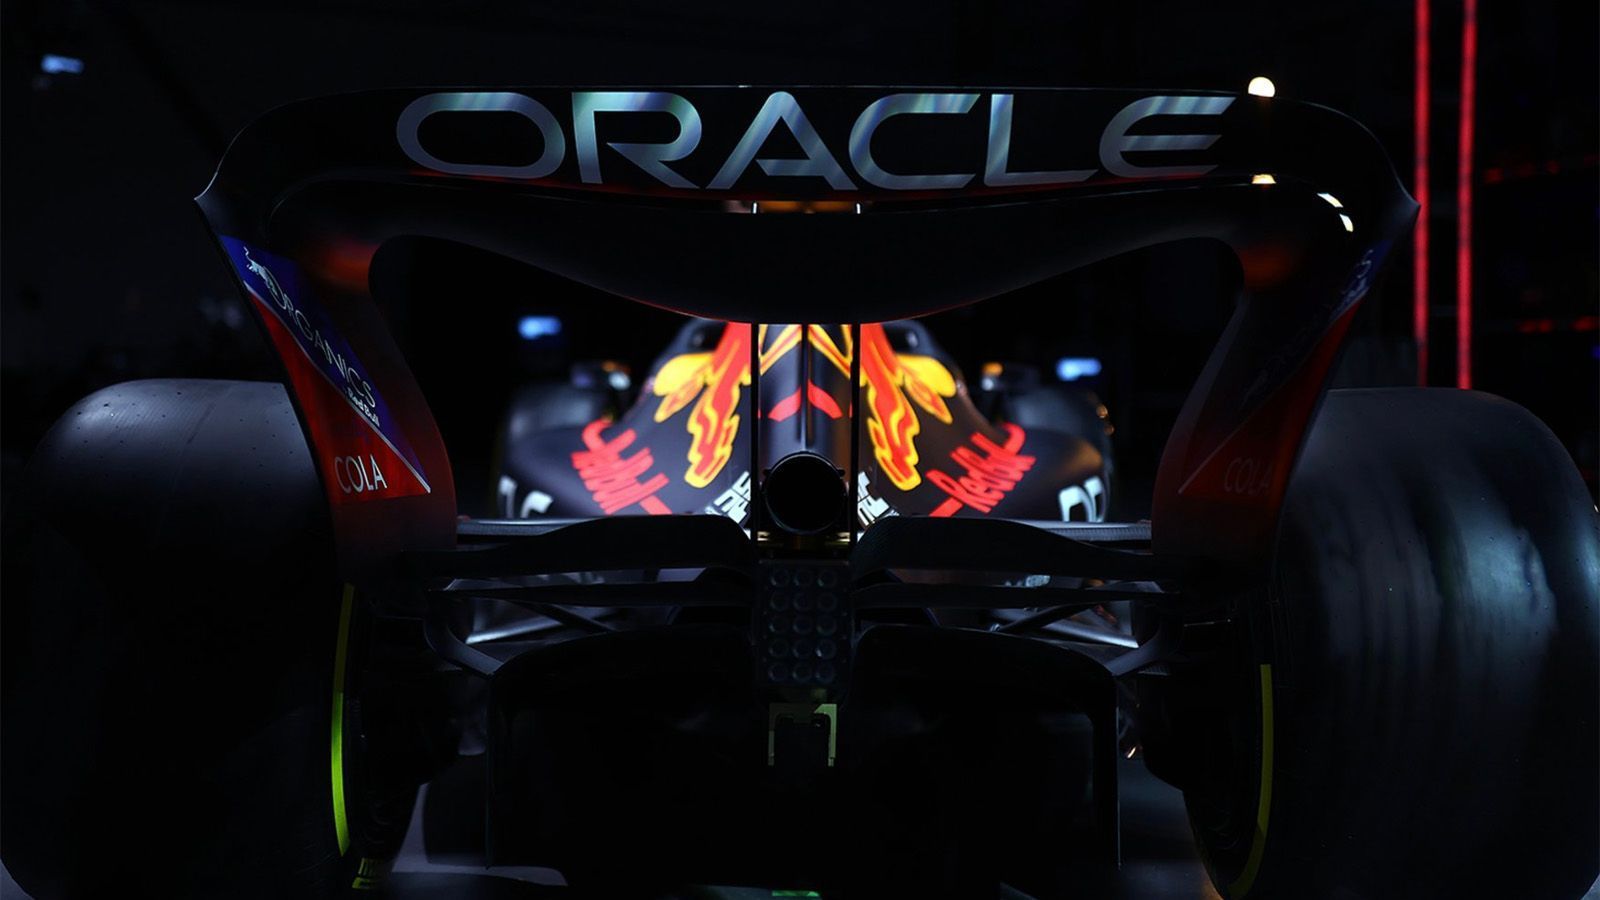 
                <strong>Die neuen Autos der Formel-1-Saison 2022</strong><br>
                Durch das neue Reglement bekommen die Formel-1-Autos im Vergleich zum Vorjahr einen deutlich anderen Look. Die Aerodynamik wird vereinfacht, der Bodeneffekt kehrt zurück. Die Räder wechseln von 13 Zoll auf 18 Zoll und sind damit deutlich größer. Das optische Design bleibt den Teams aber natürlich selbst vorbehalten. ran stellt die Boliden der F1-Teams vor. 
              